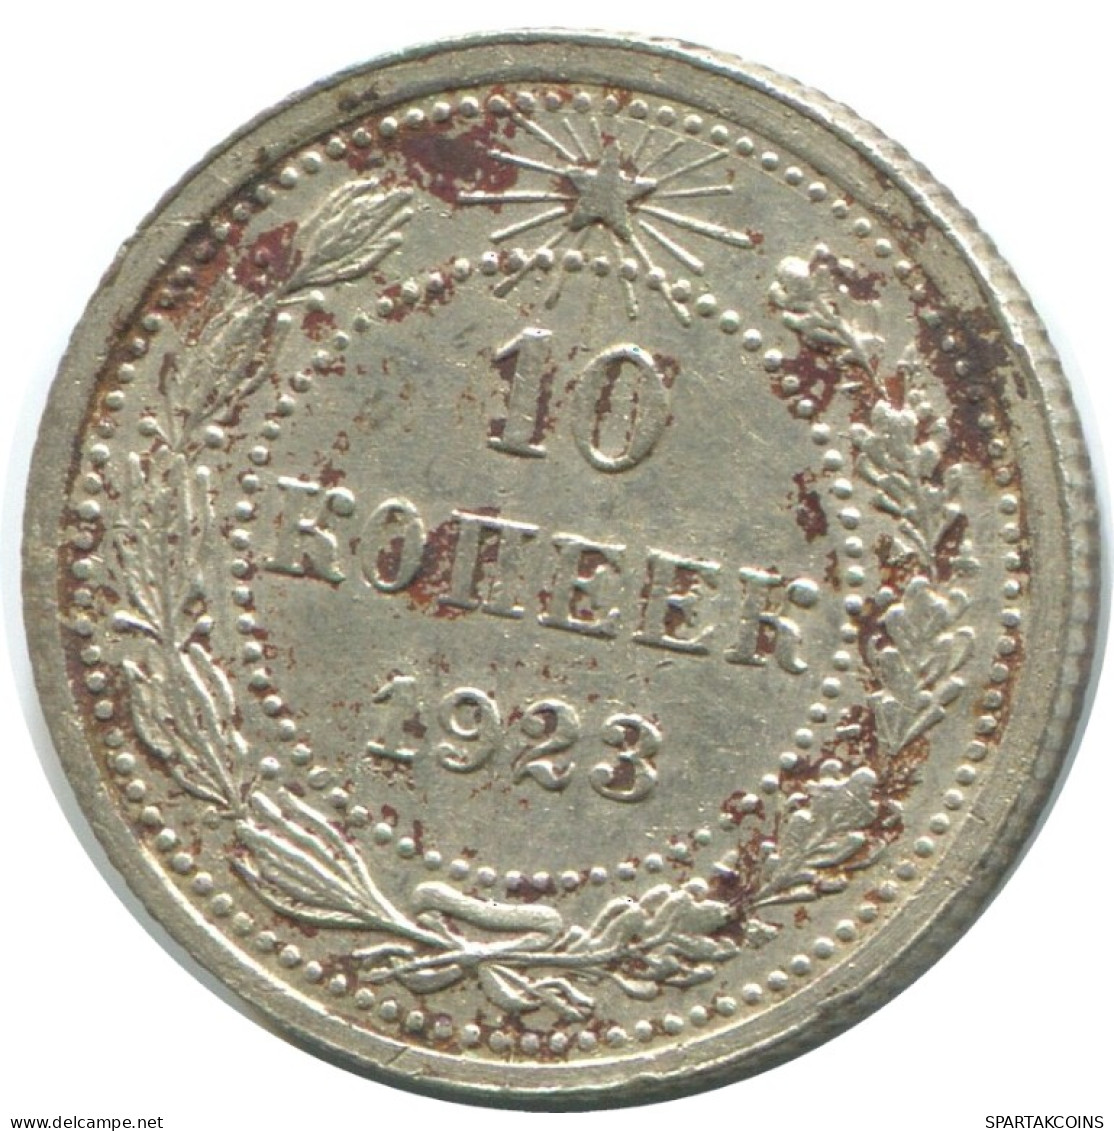 10 KOPEKS 1923 RUSSLAND RUSSIA RSFSR SILBER Münze HIGH GRADE #AE936.4.D.A - Russland